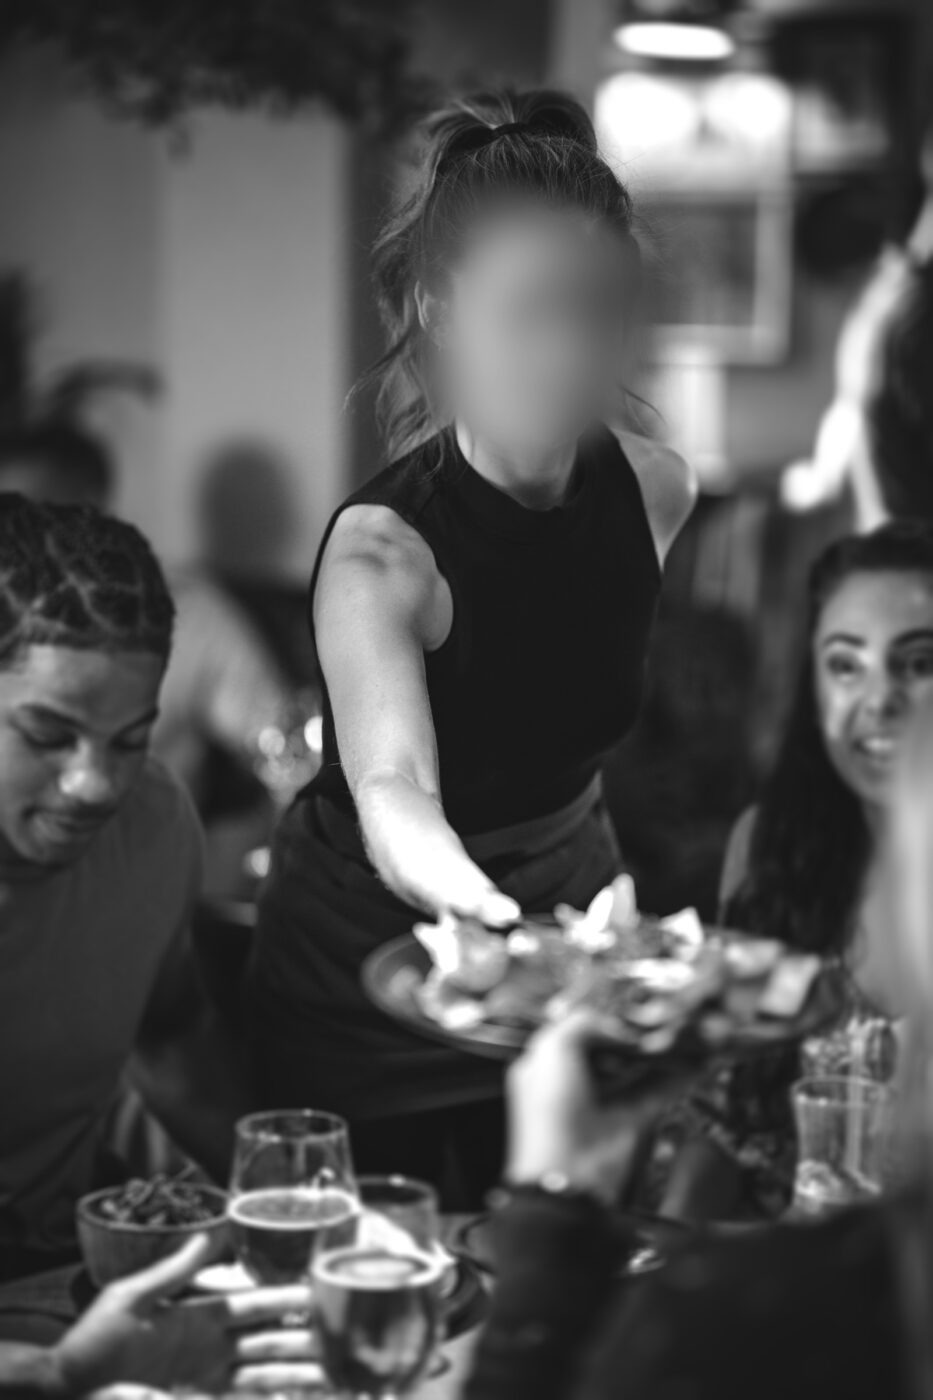 Simulation einer Restaurantszene mit zentralem Gesichtsfeldausfall: Das Gesicht der Kellnerin auf welchem der Fokus liegt, ist nicht erkenntlich